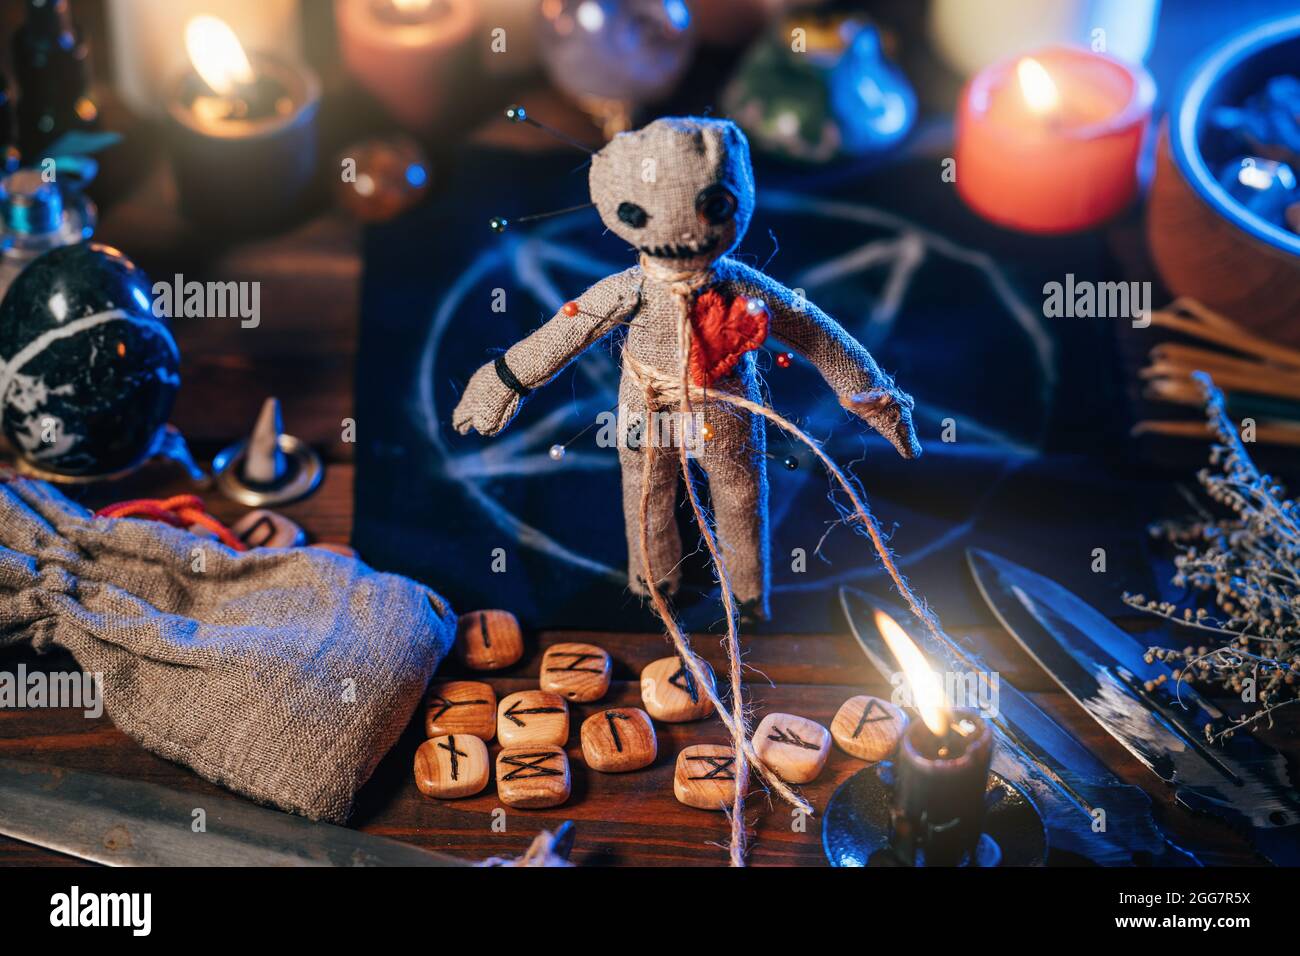 Bambola Voodoo tra candele bruciate e oggetti rituali magici per rito esoterico sinistro e scuro. Foto Stock